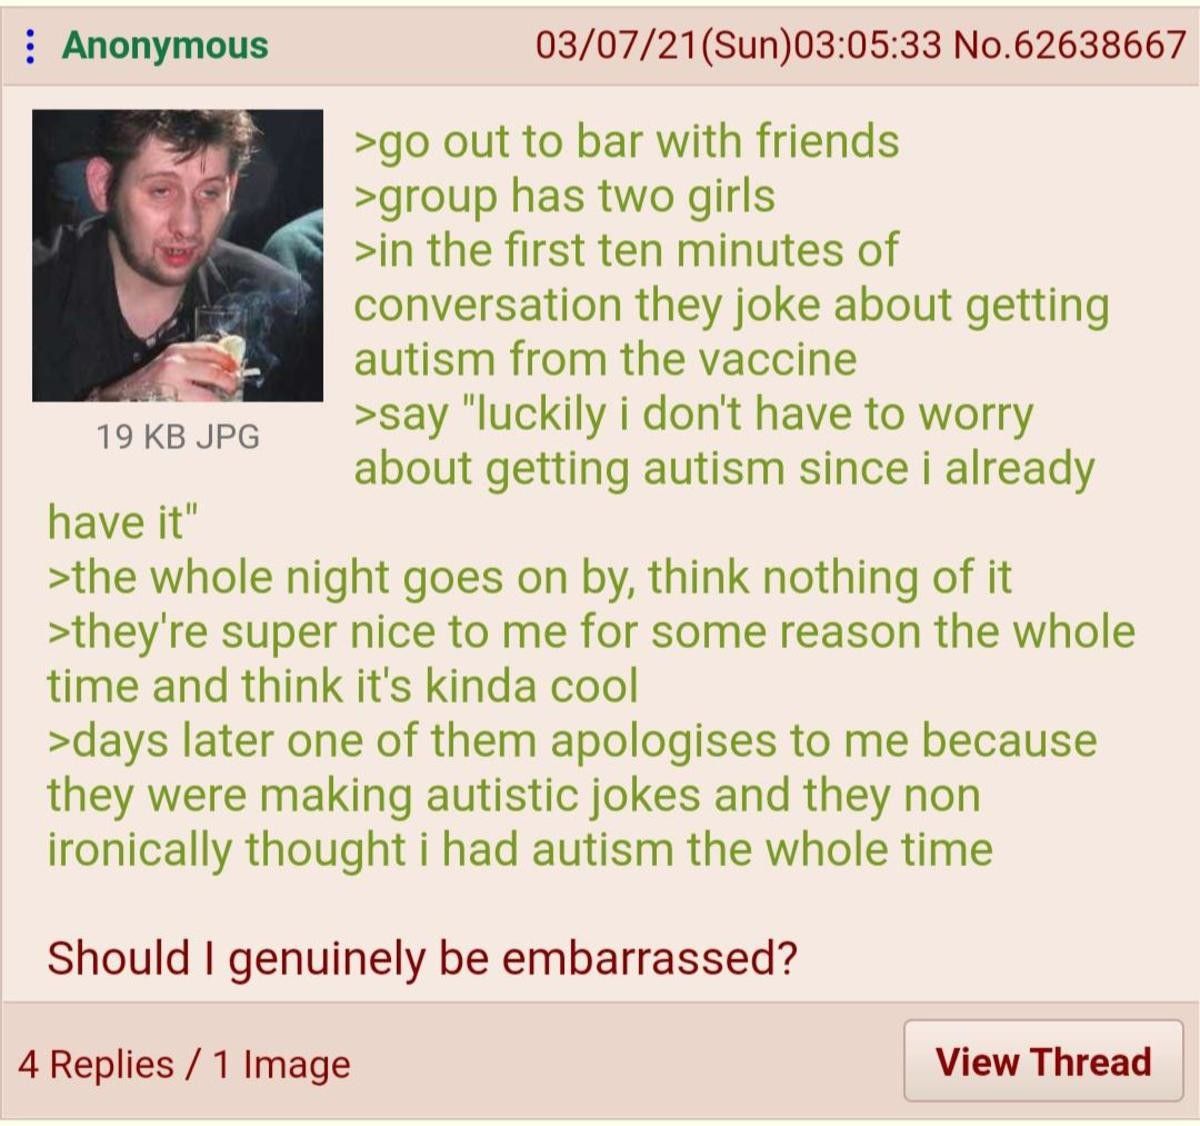 anon has autism